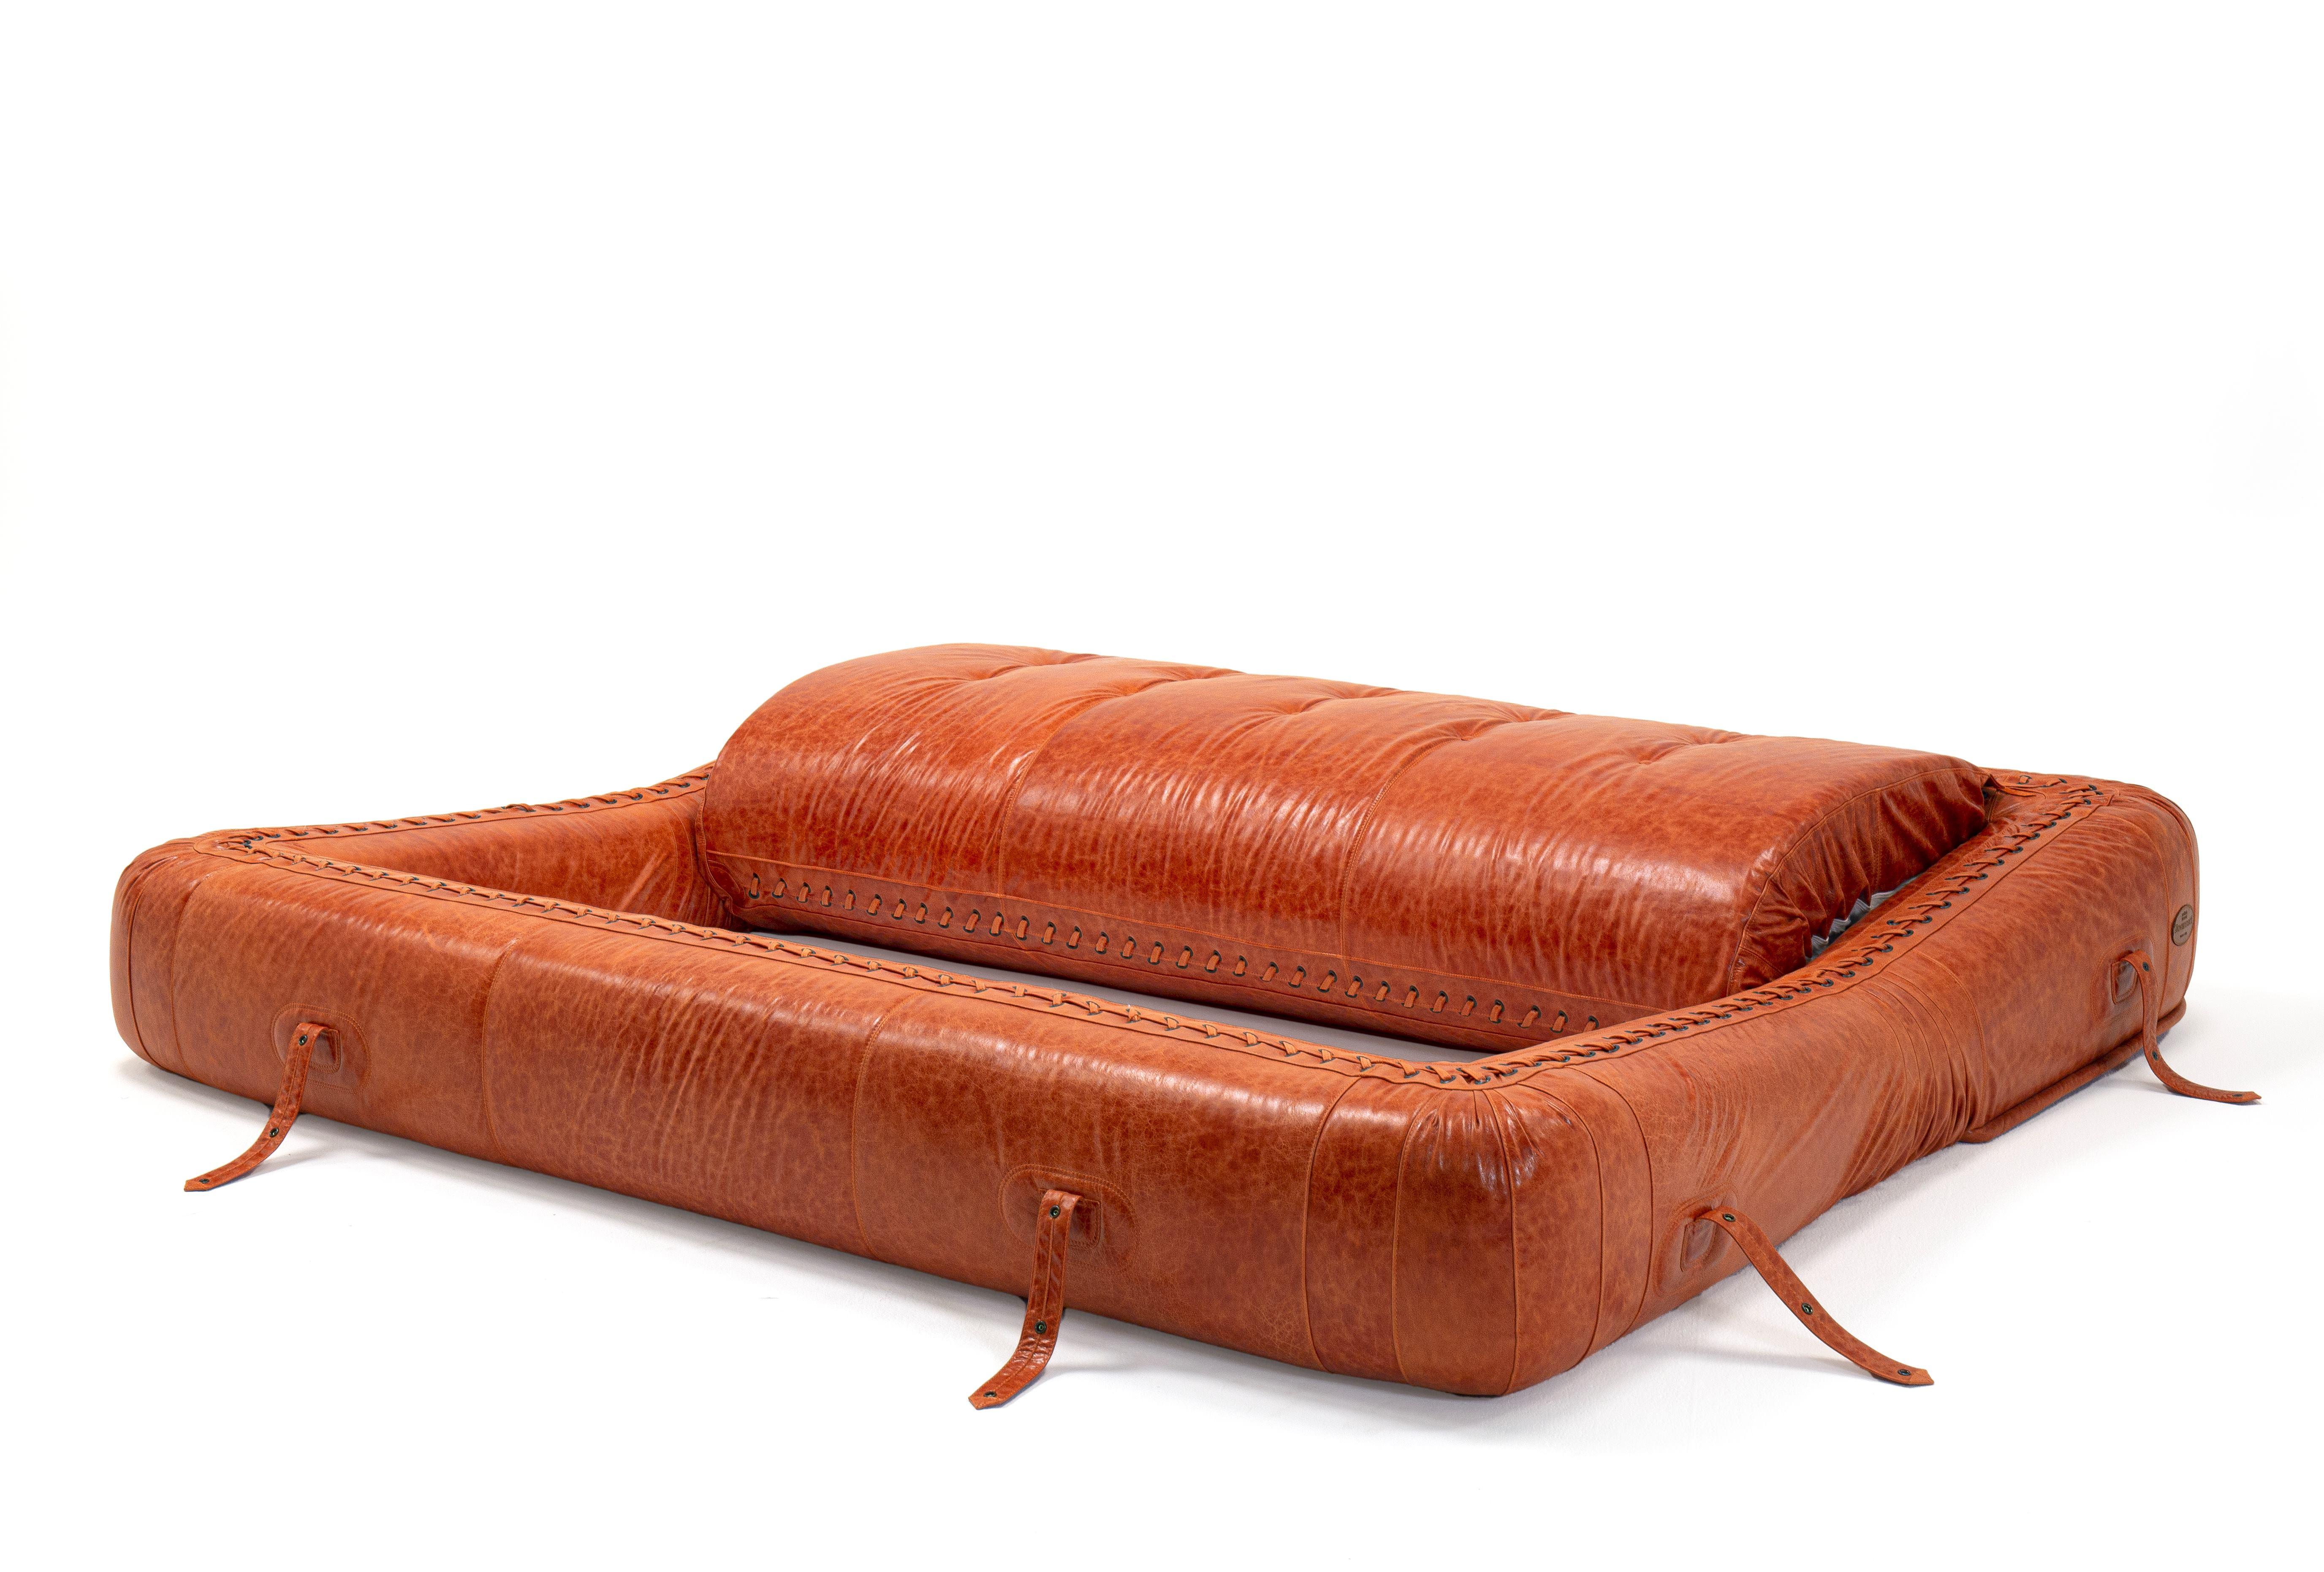 Le canapé-lit, conçu par Alessandro Becchi en collaboration avec l'équipe de Giovannetti, a récemment fêté ses 50 ans.
Son histoire est riche en événements et participations importants. Une pièce considérée comme un 